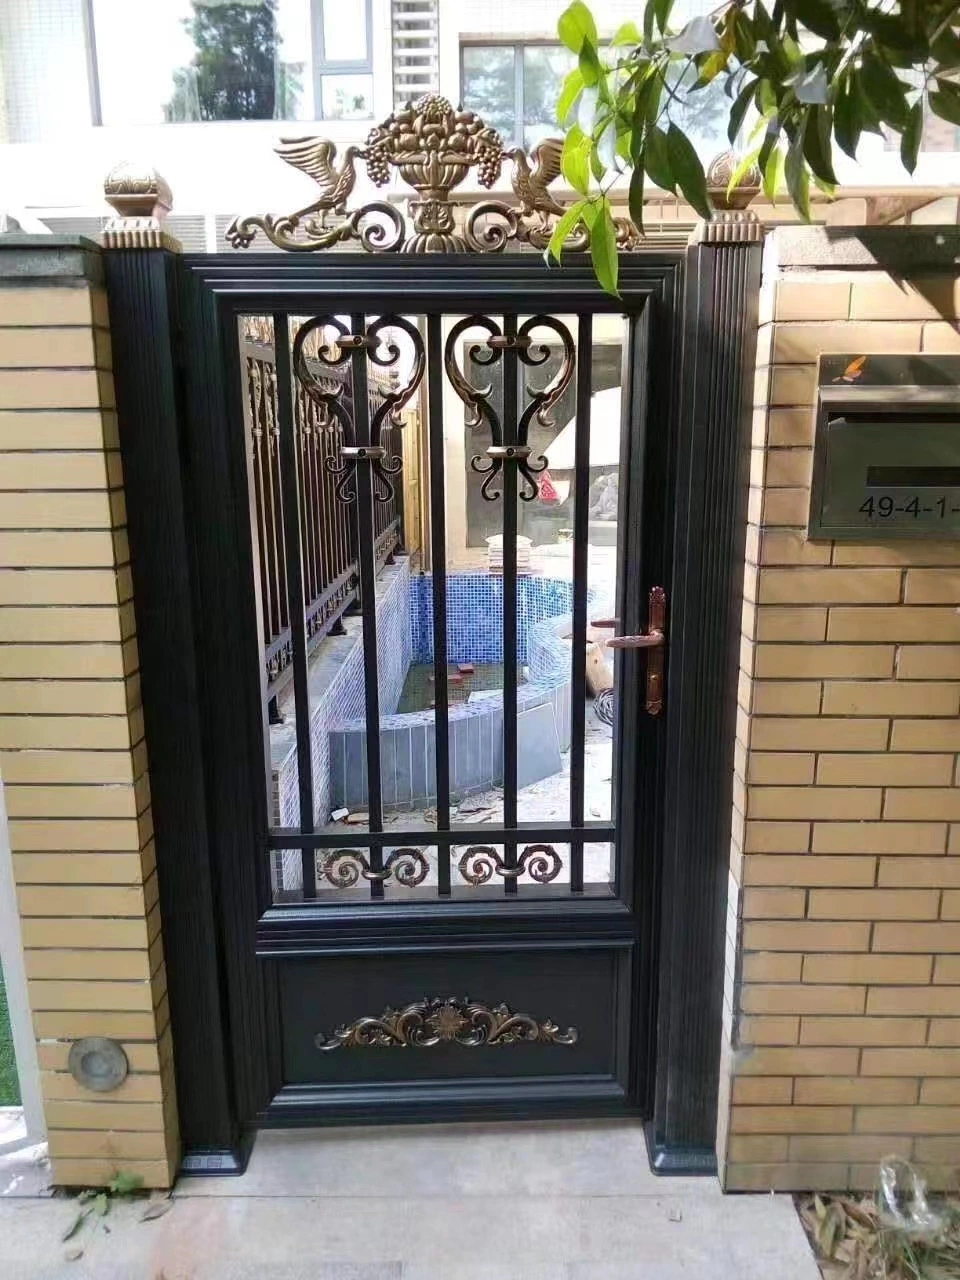 Villa de la puerta del patio de la puerta de Obturador de acero inoxidable de portón eléctrico de la puerta del patio de aleación de aluminio exterior